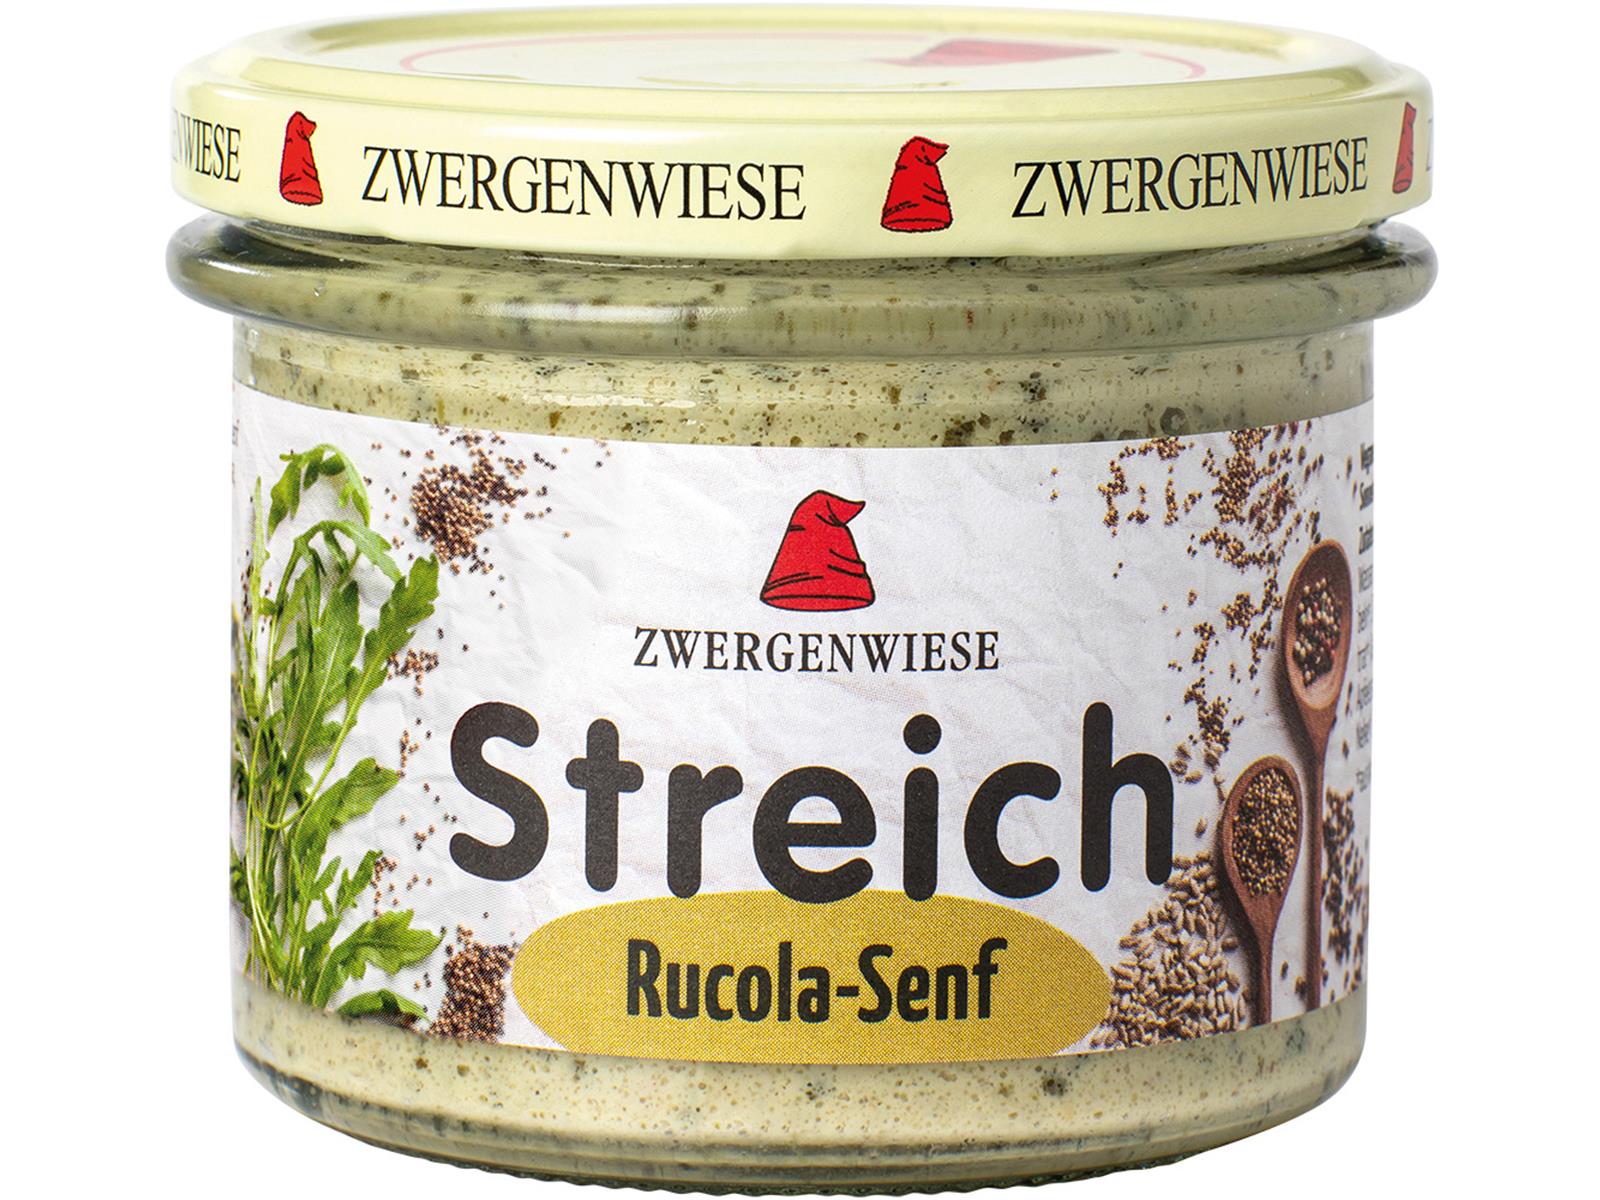 Zwergenwiese Rucola-Senf Streich 180 g